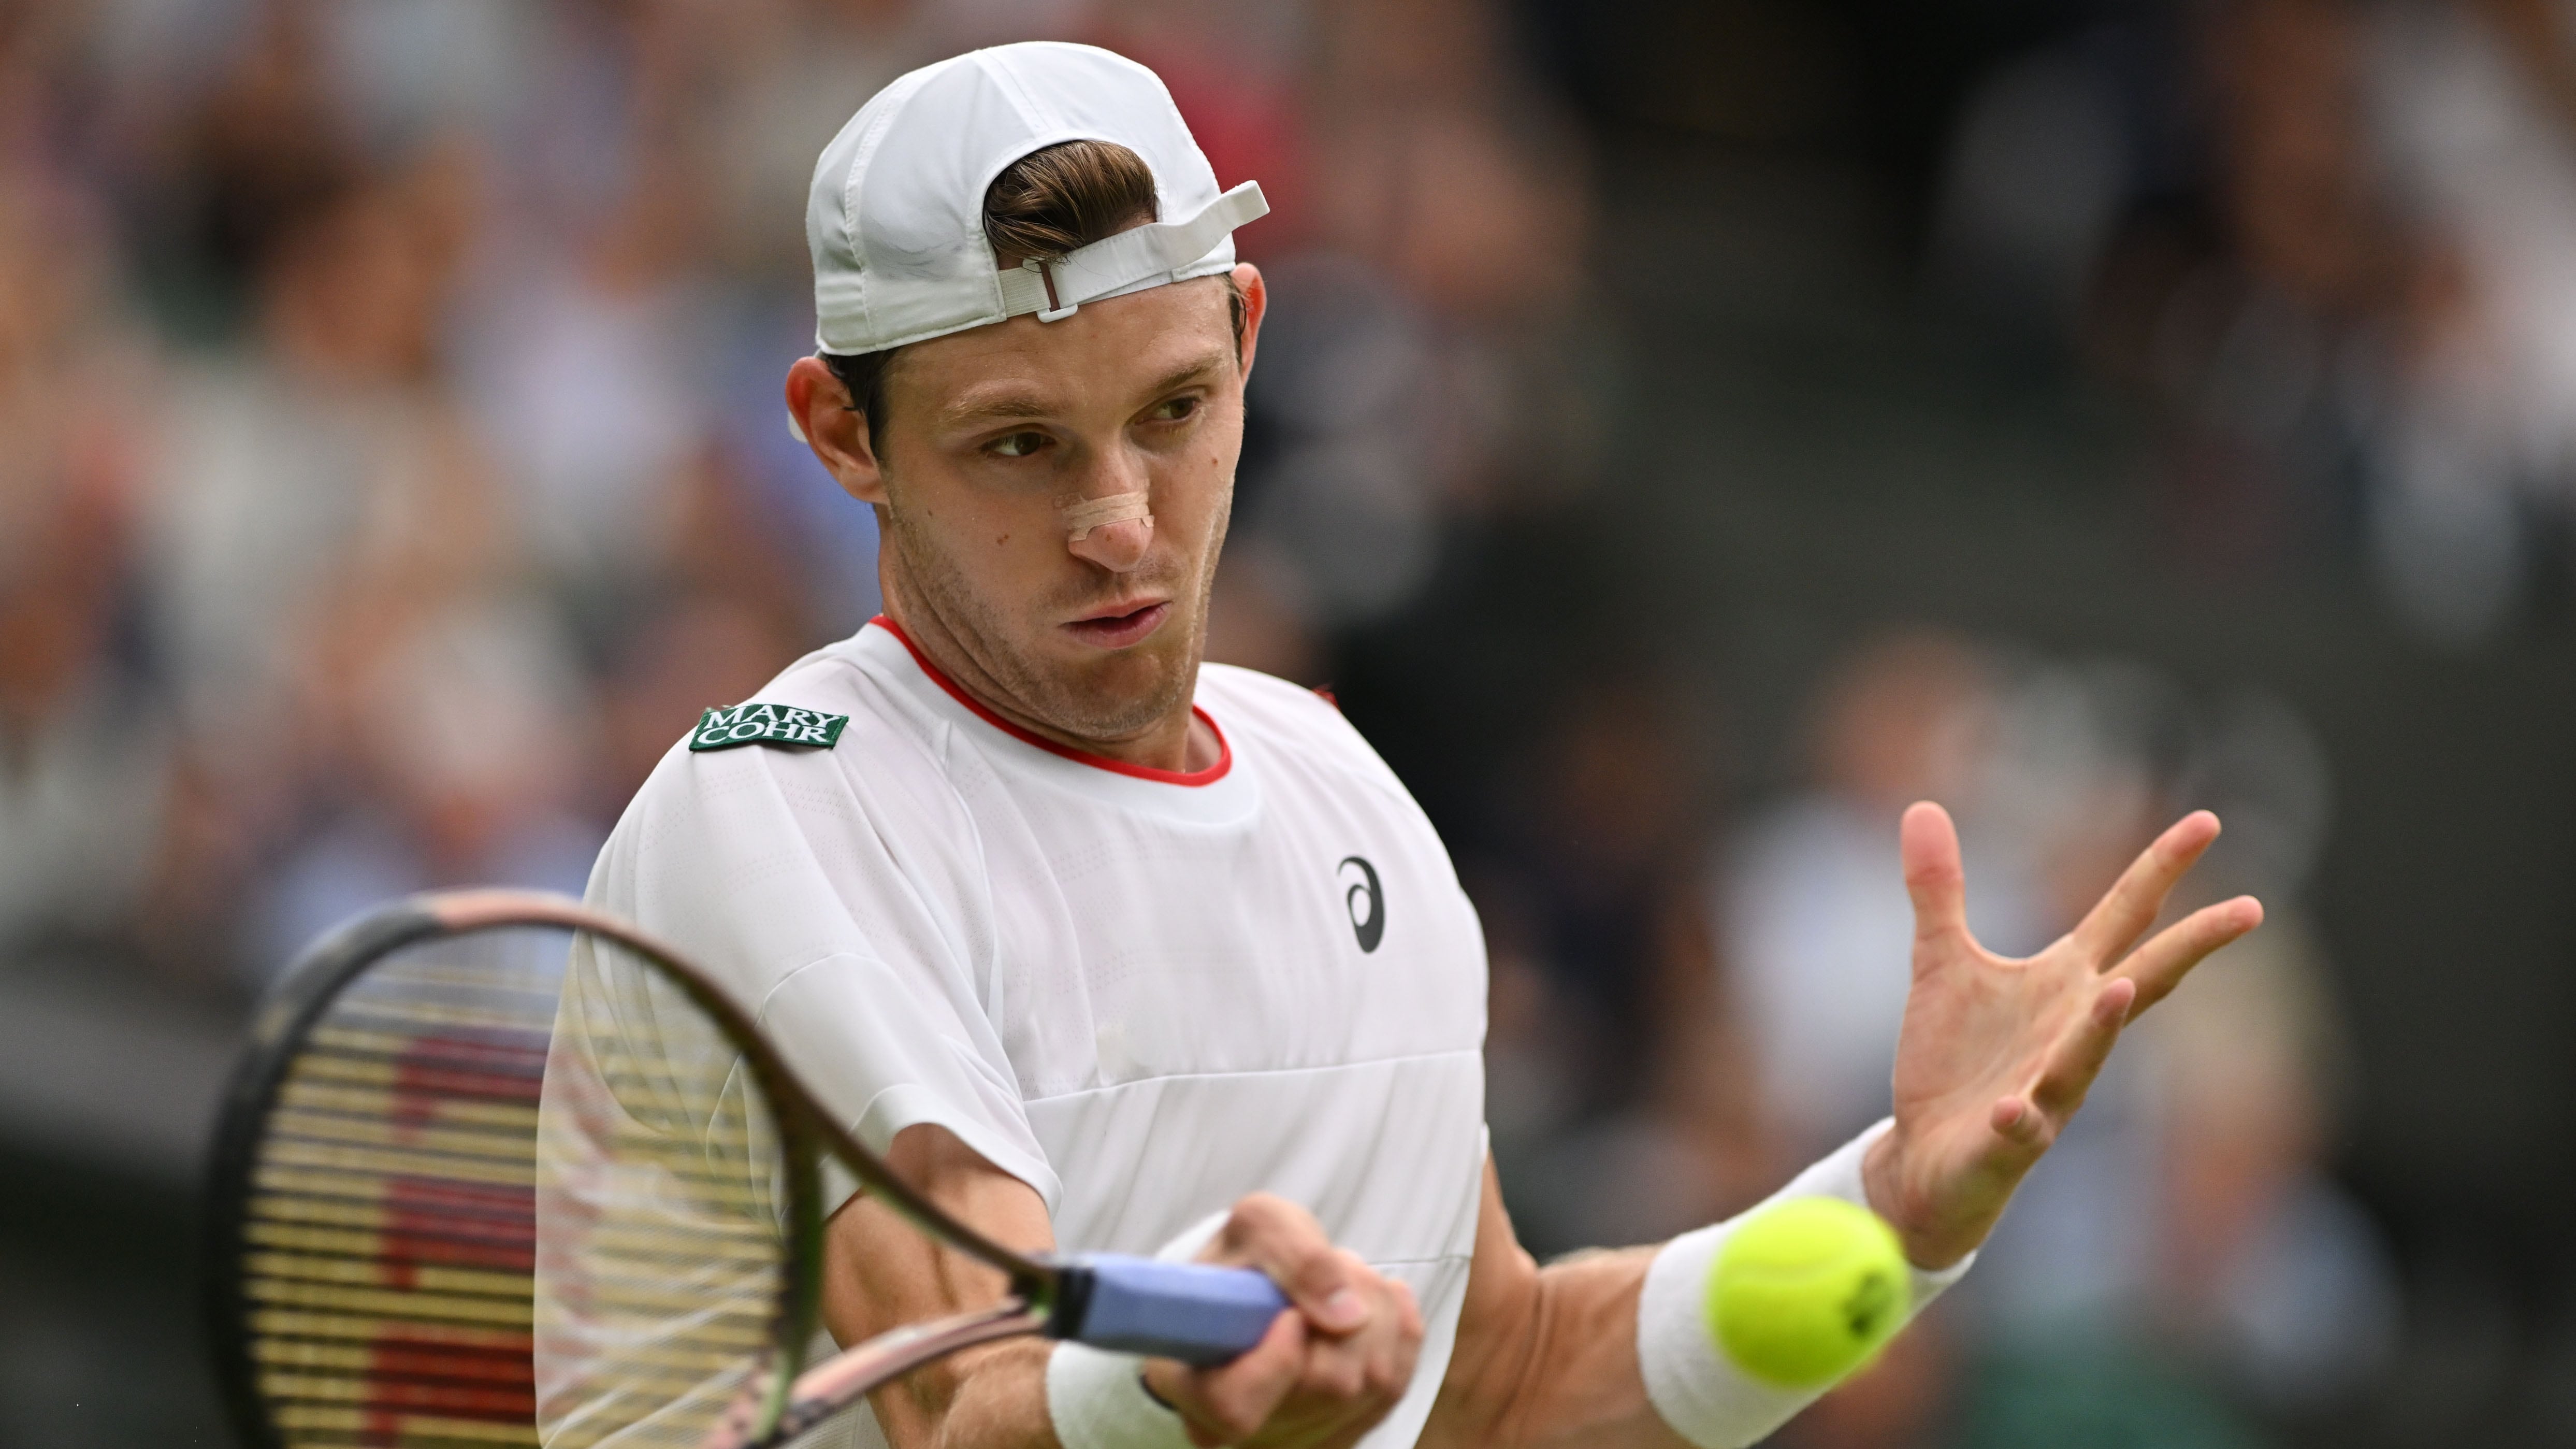 Nicolás Jarry, en la tercera ronda de Wimbledon. / AFP